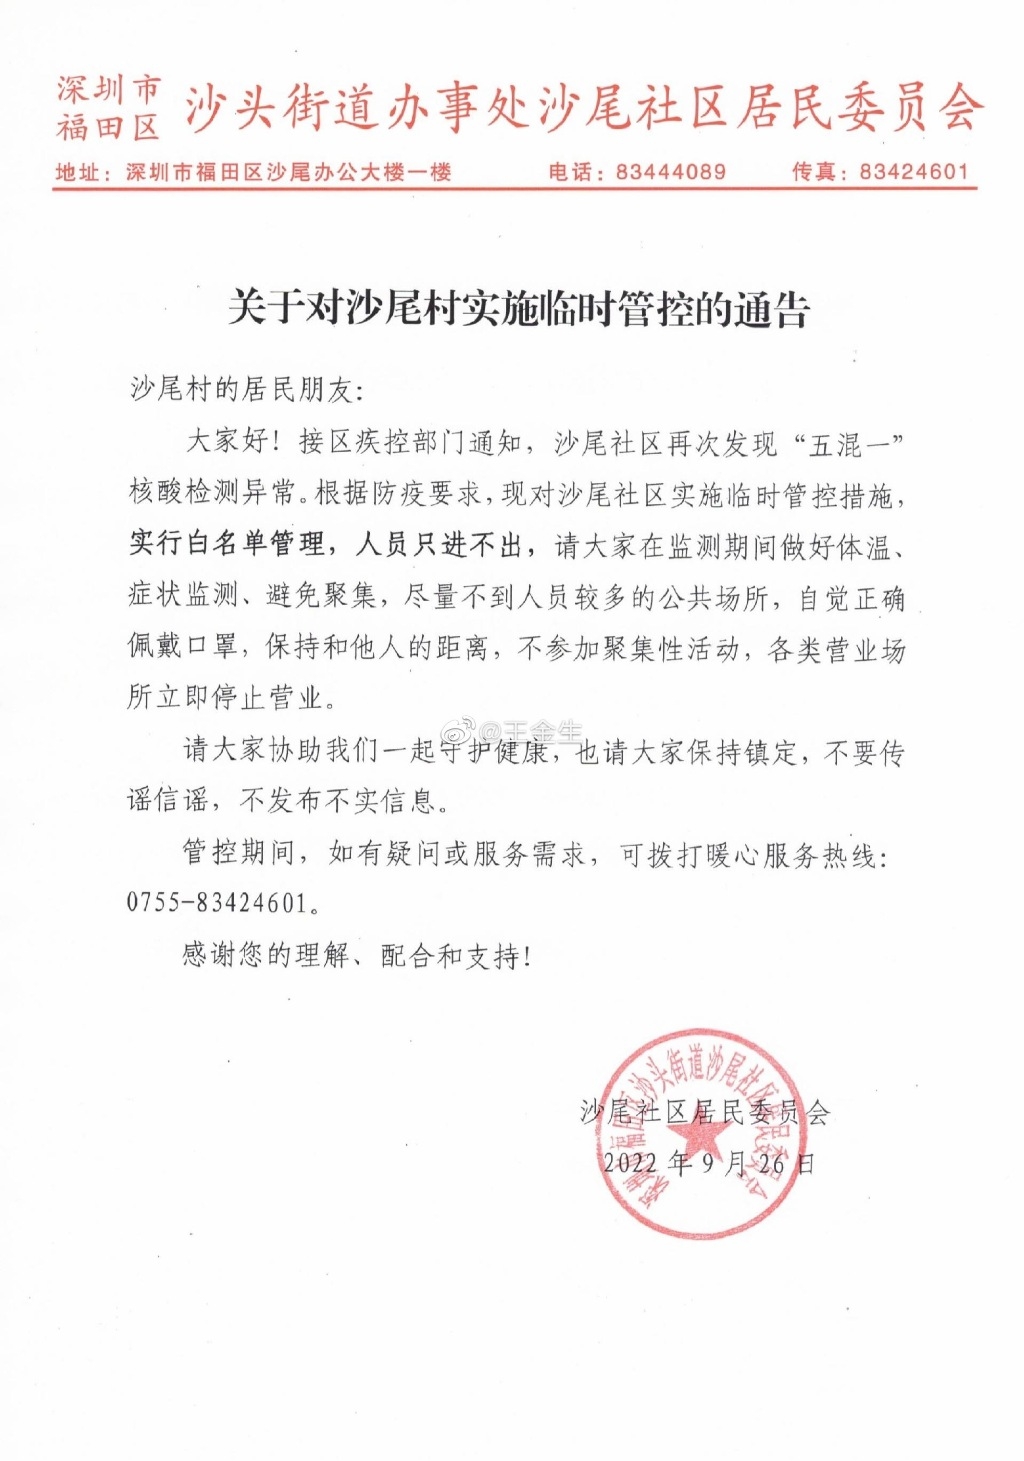 深圳當局封控通告。